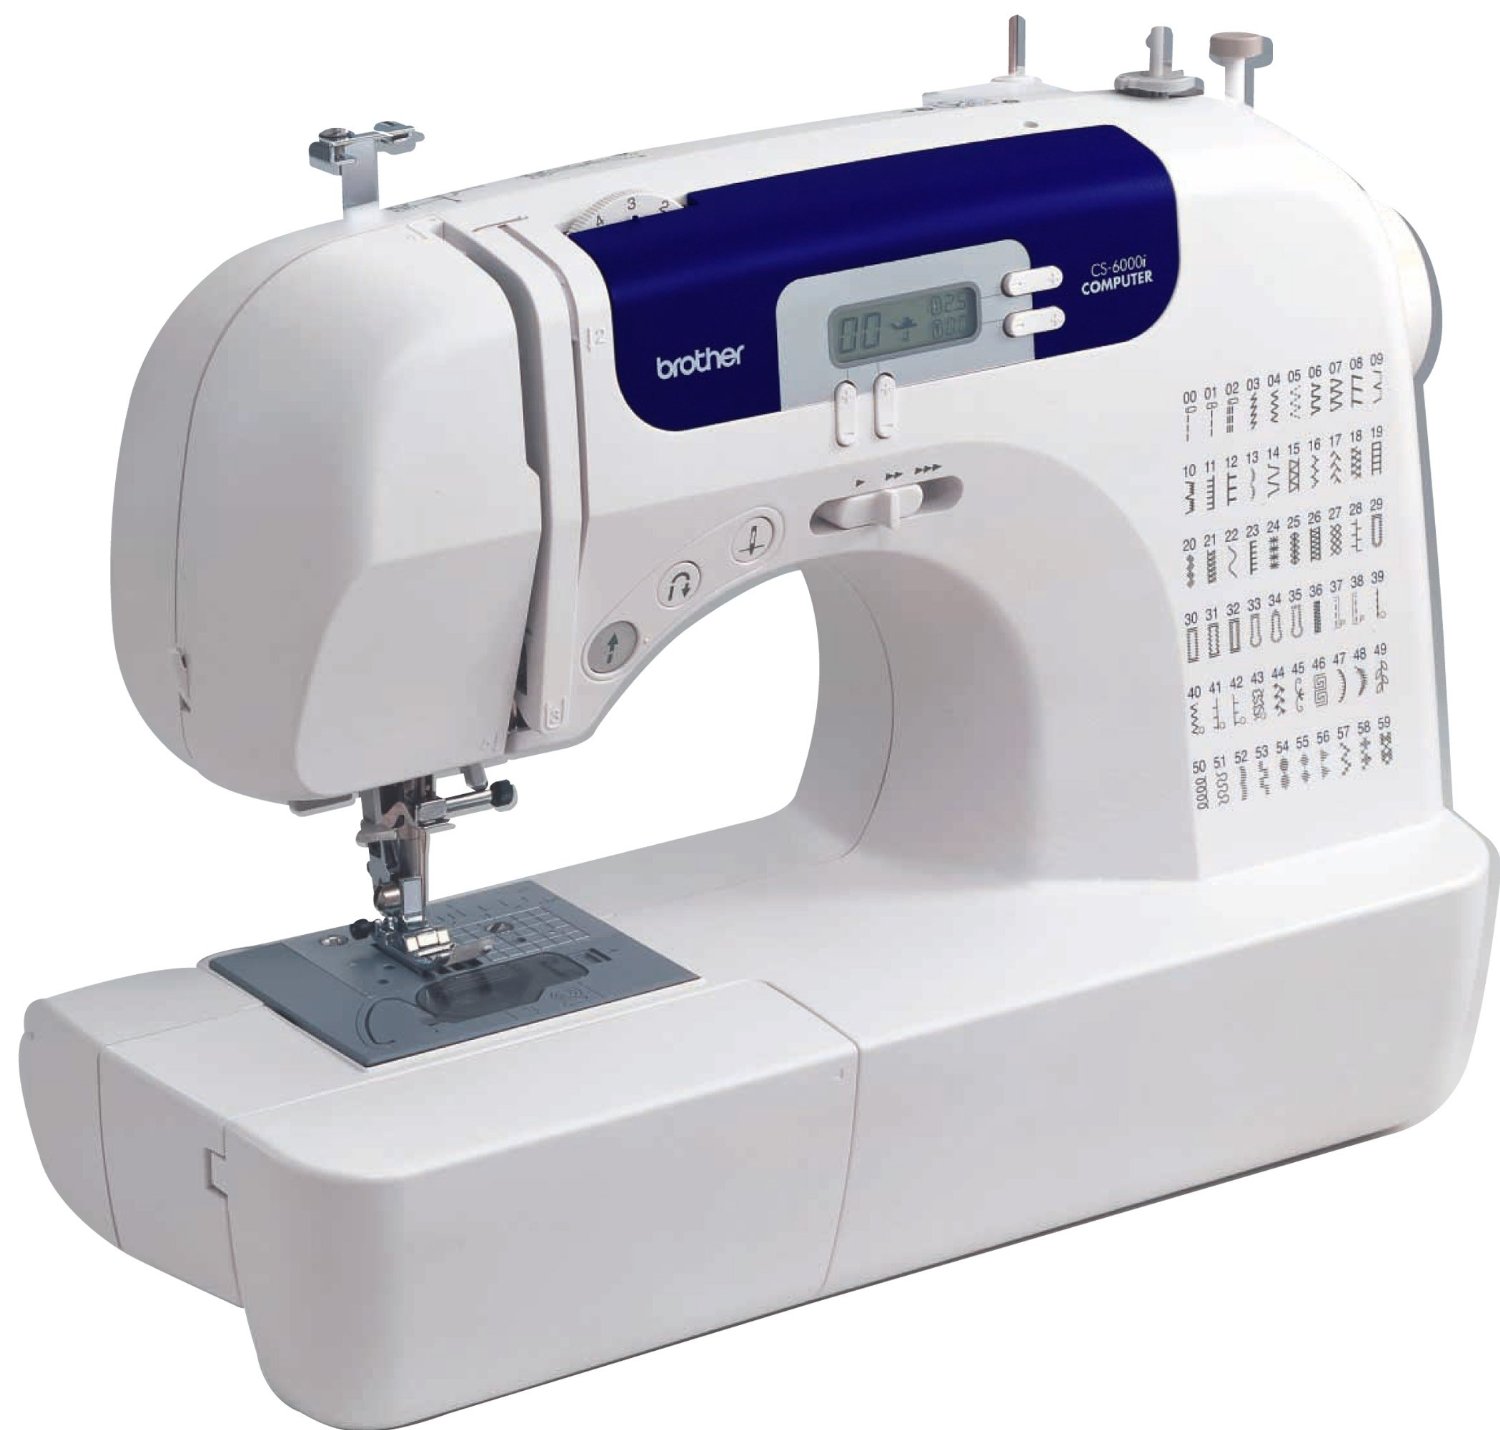 The best beginner sewing machine